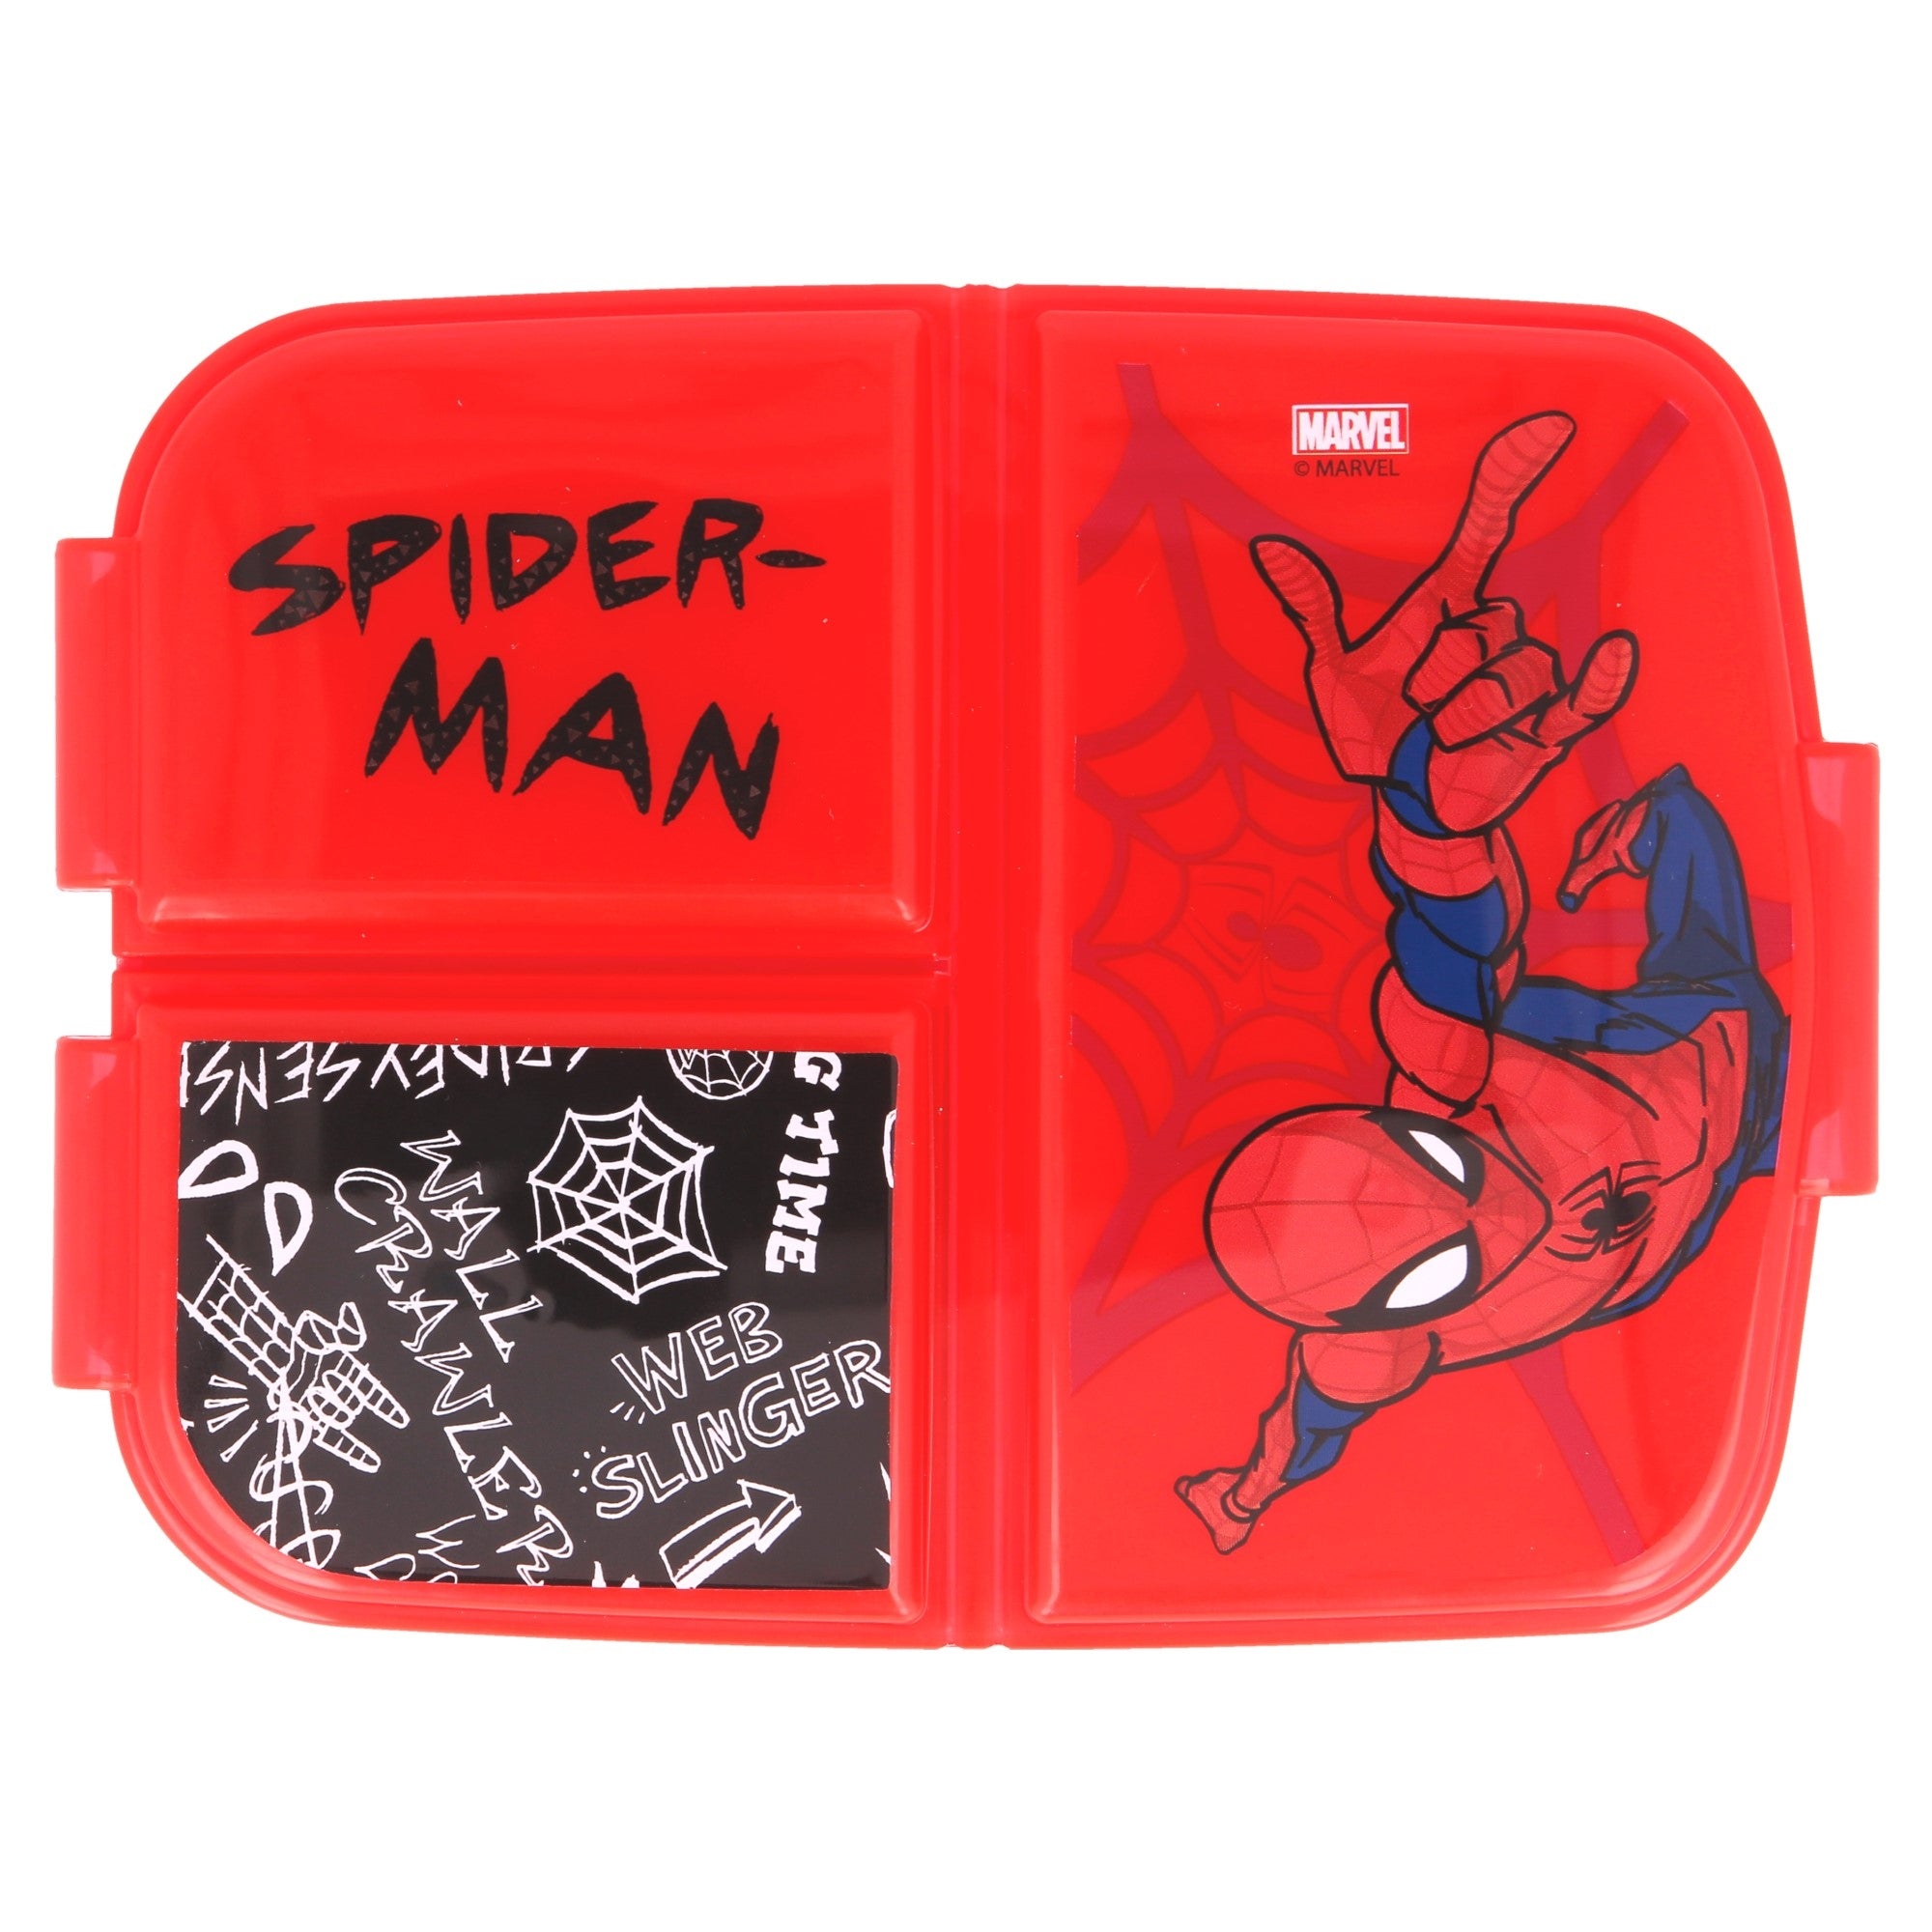 Nestisbox  með þremur hólfum - Spiderman